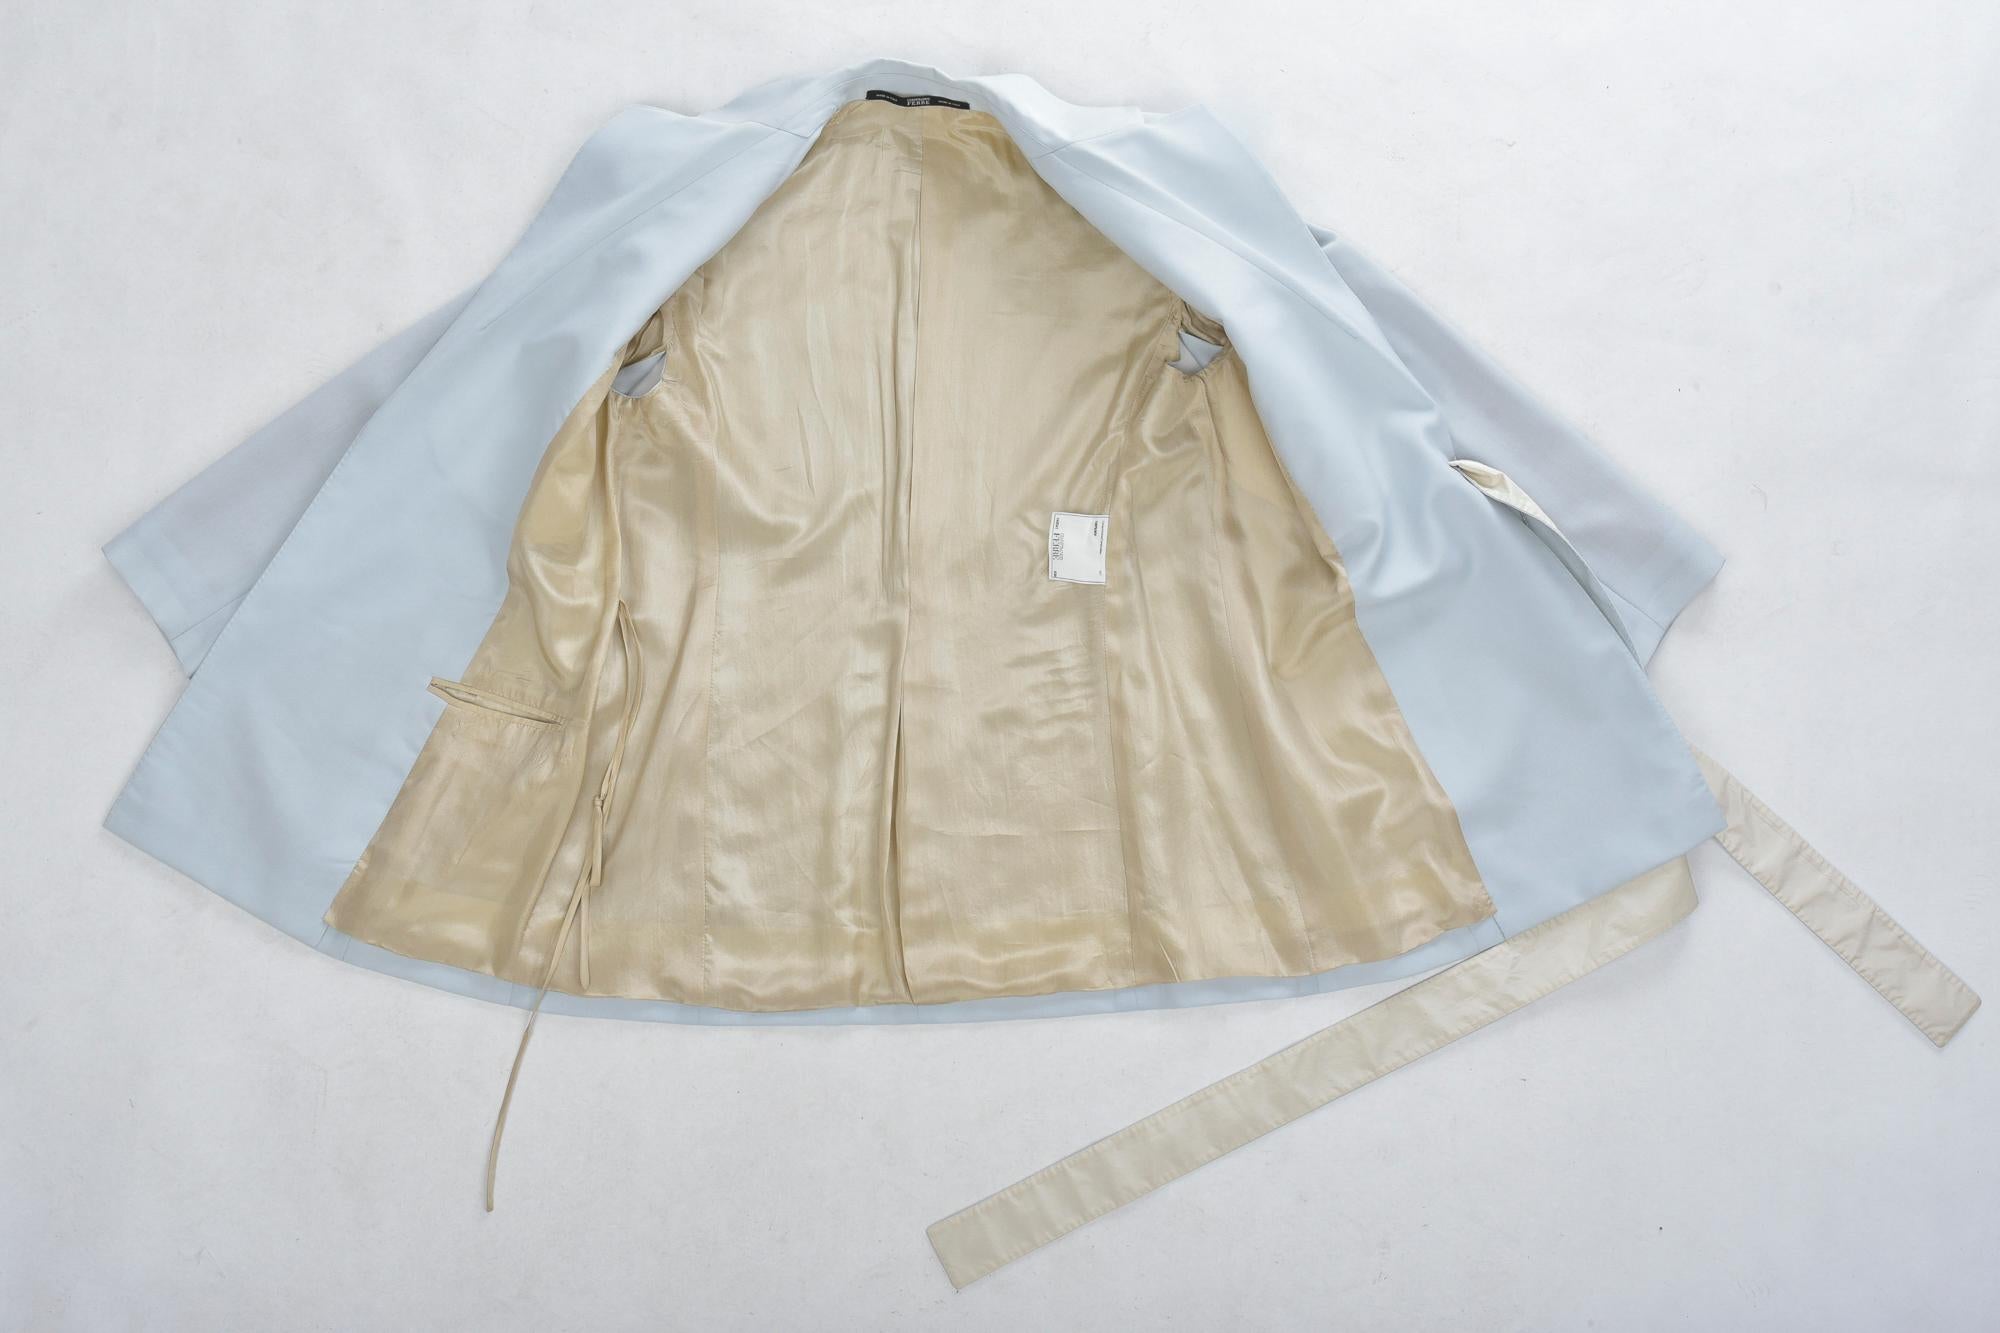 Gris Costume pantalon de smoking bleu glace de Gianfranco Ferre - Italie, circa 1995 - 2000 en vente